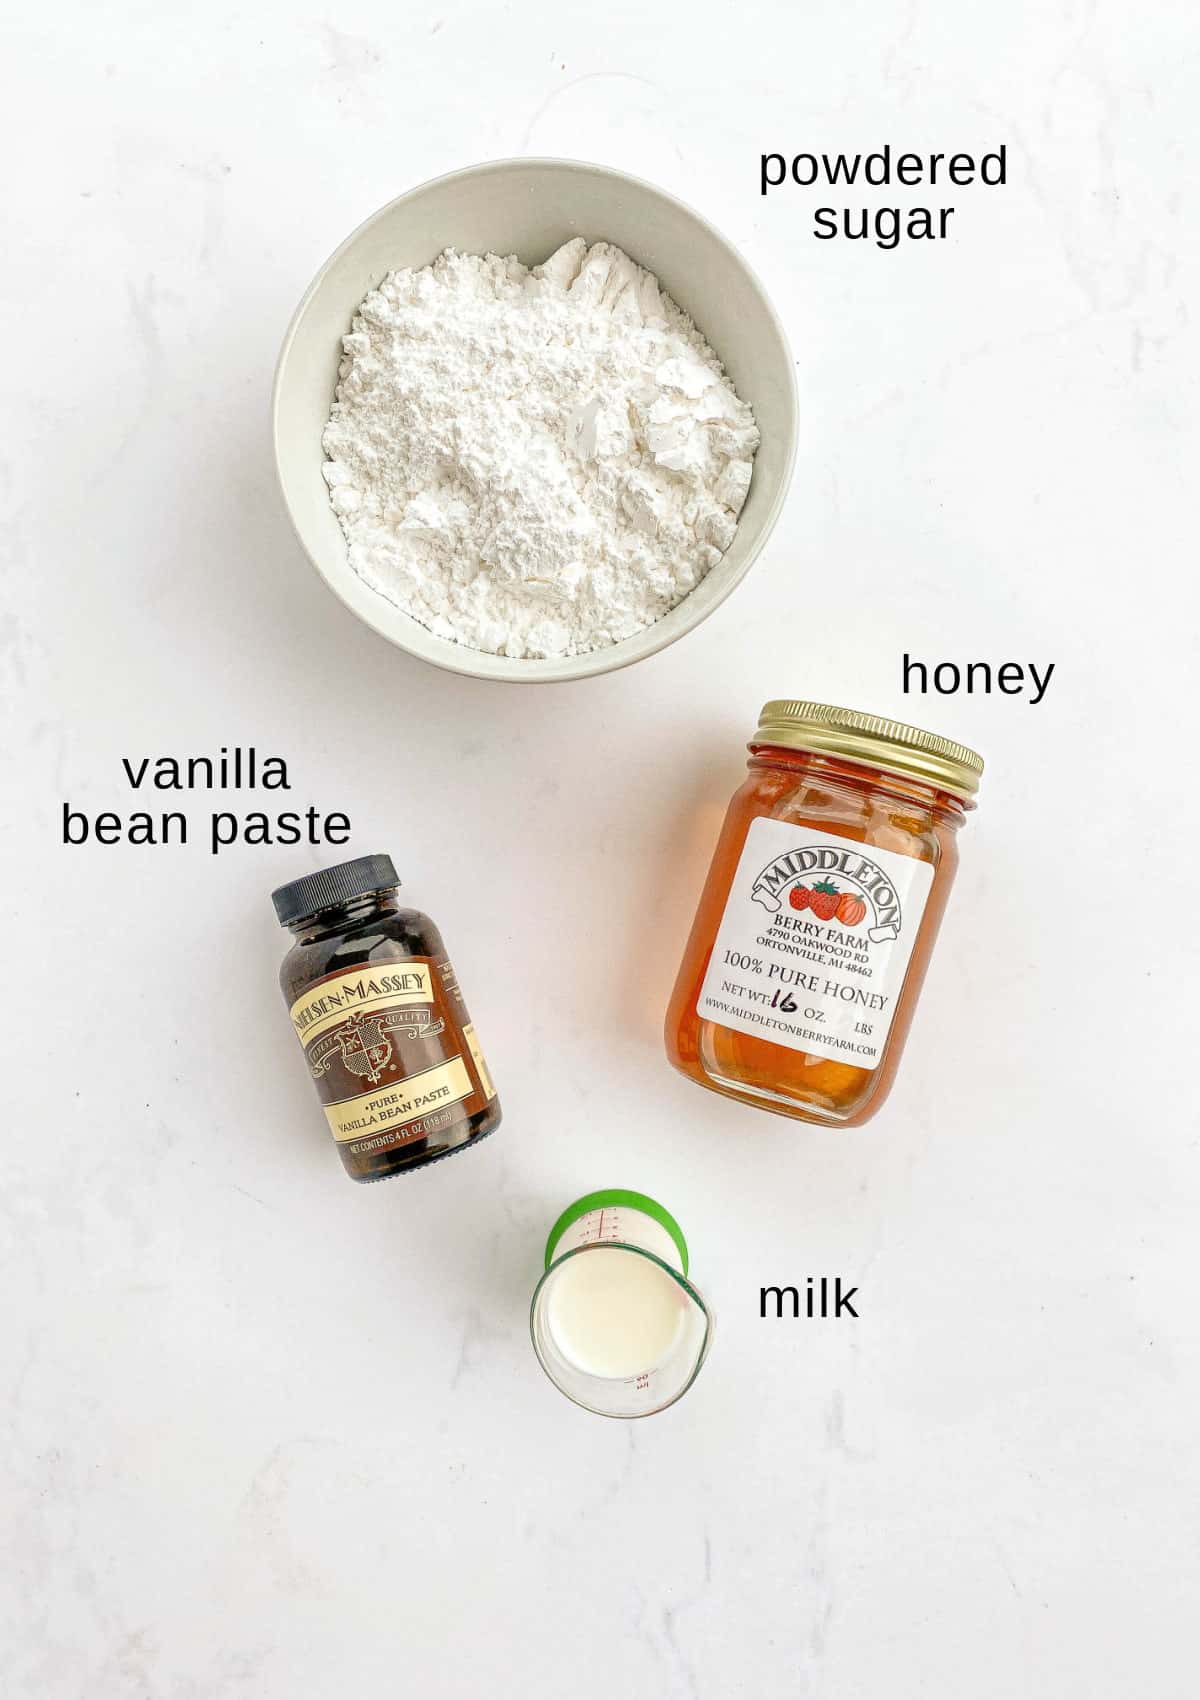 Vanilla honey glaze ingredients on a white background.